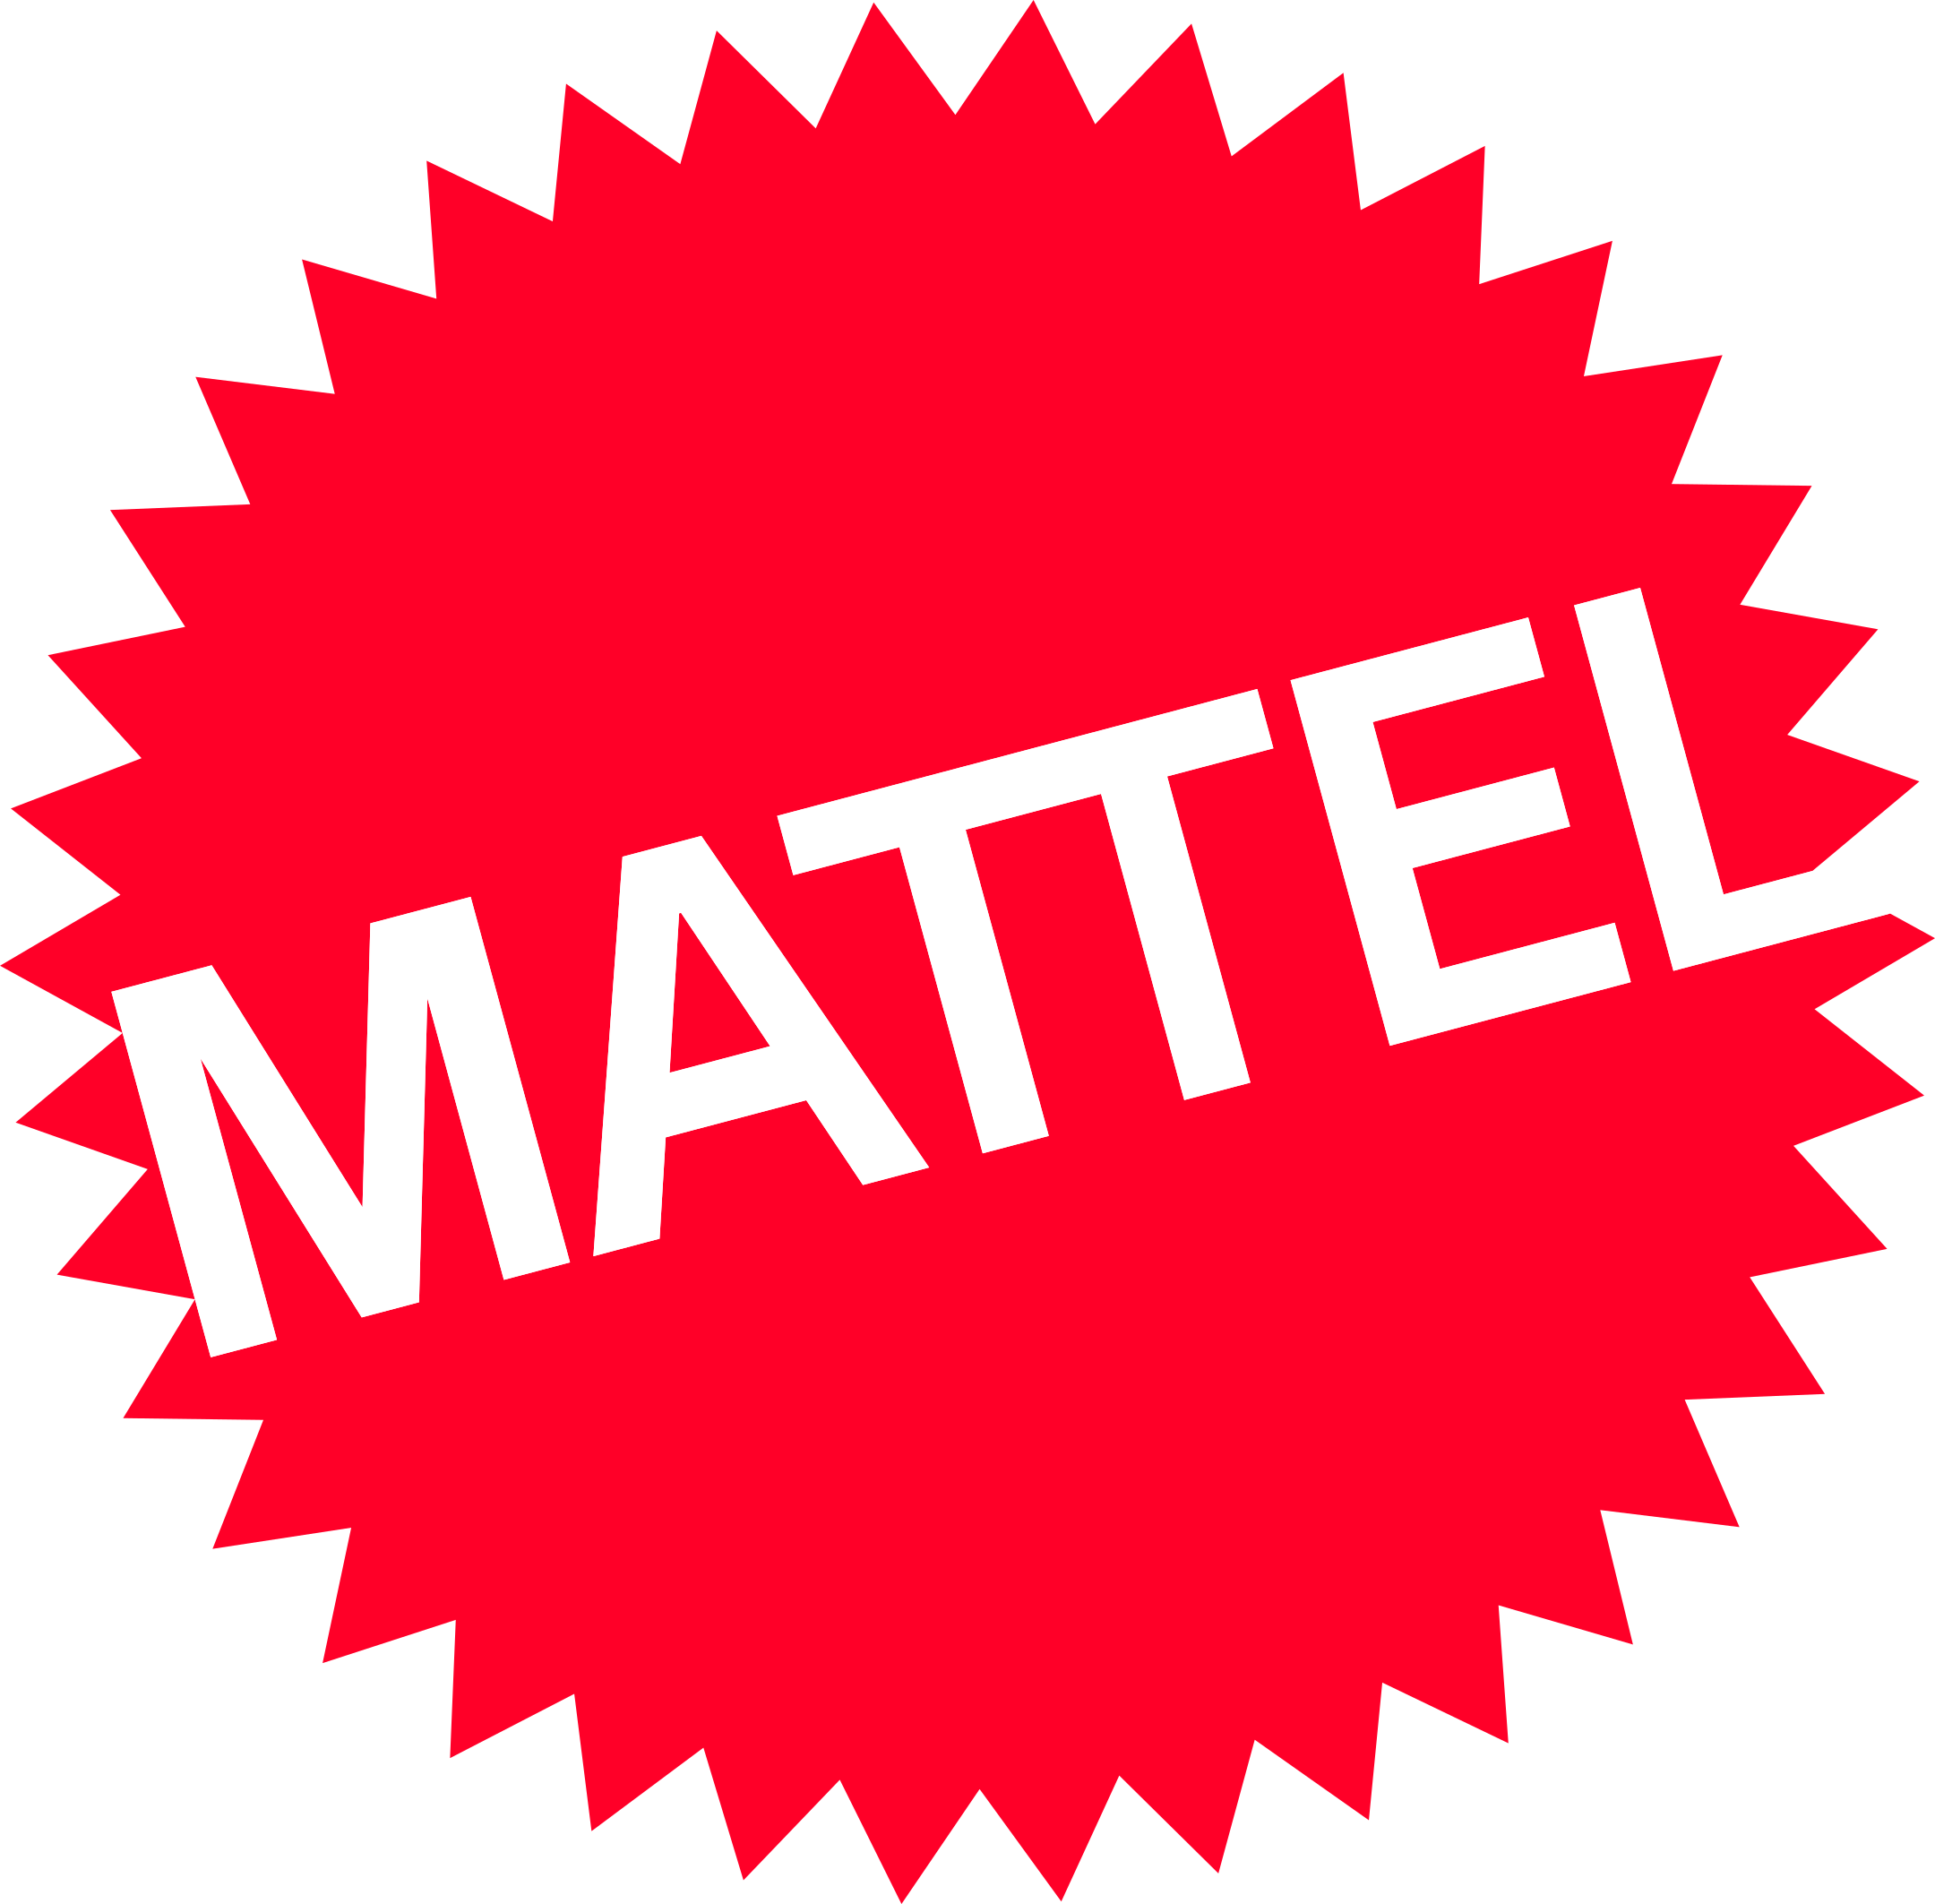 mattel logo 1 1 - Mattel Logo